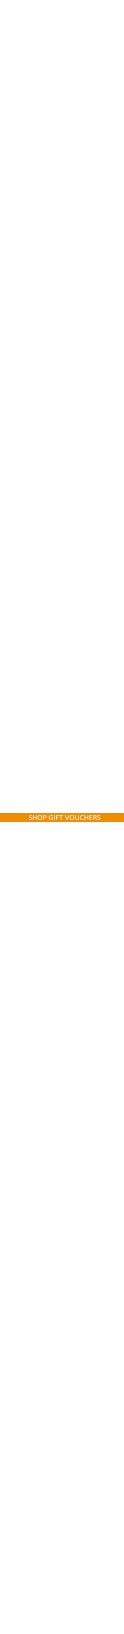 shop-gift-vouchers